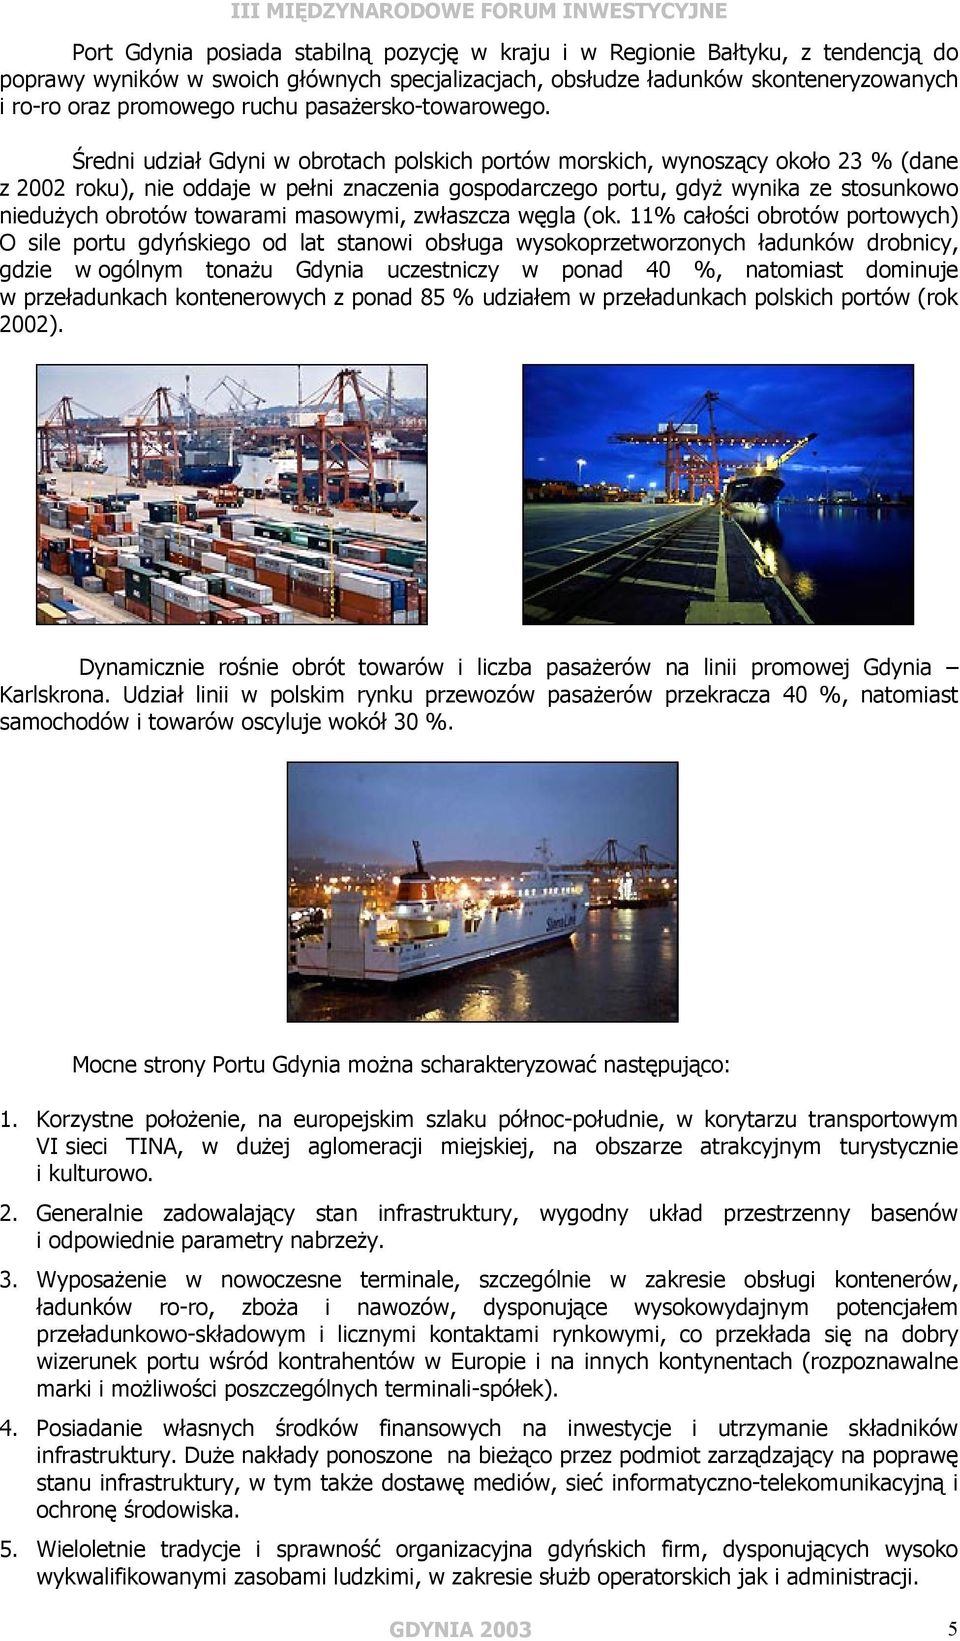 Średni udział Gdyni w obrotach polskich portów morskich, wynoszący około 23 % (dane z 2002 roku), nie oddaje w pełni znaczenia gospodarczego portu, gdyż wynika ze stosunkowo niedużych obrotów